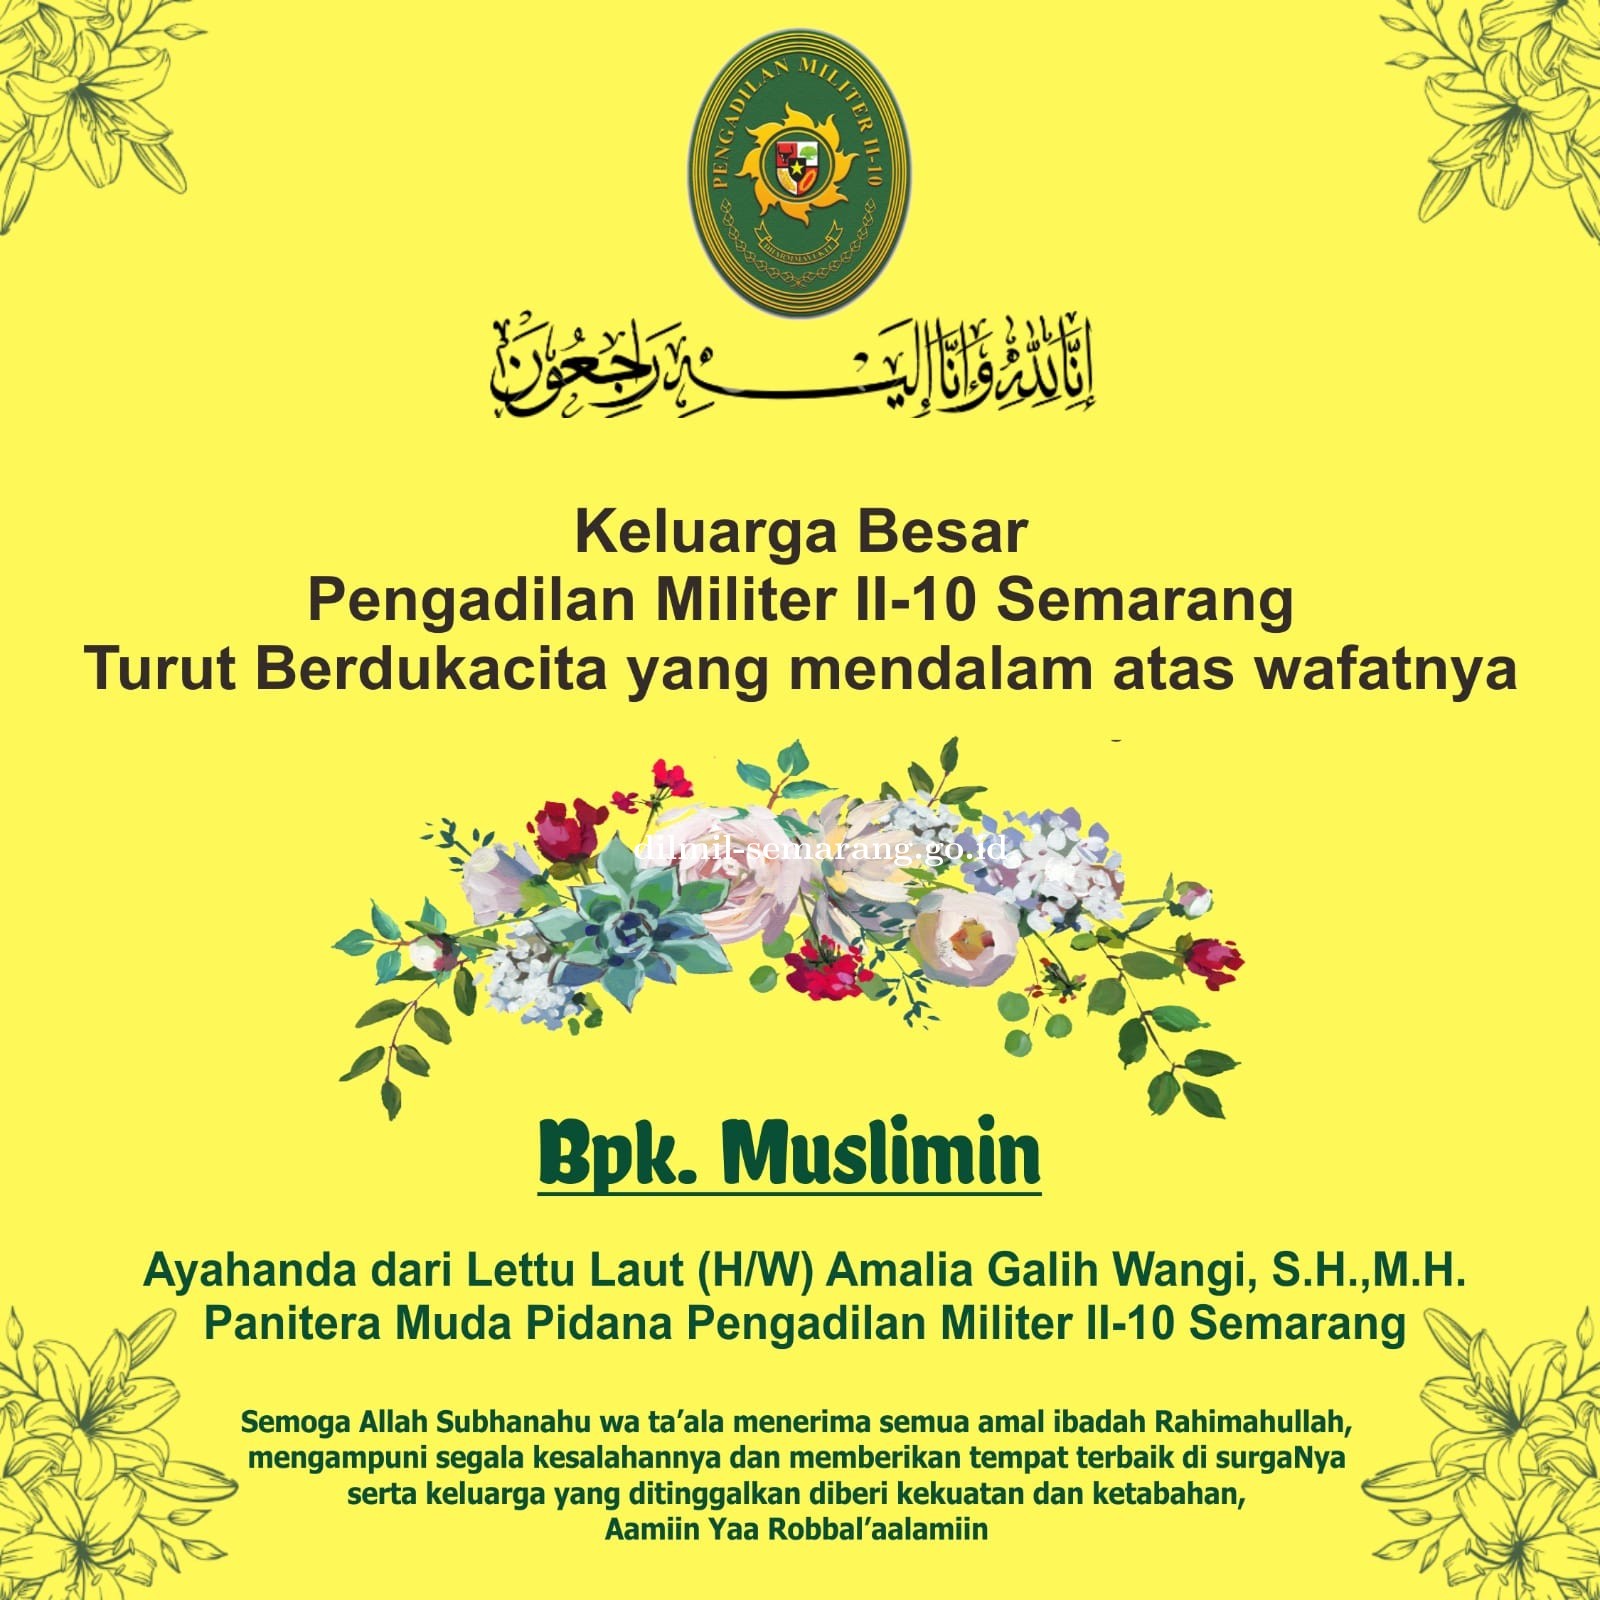 Telah meninggal dunia dengan tenang, Bpk Muslimin, ayahanda dari Lettu Laut (H/W) Amalia Galih Wangi, S.H., M.H. Panmud Pidana Dilmil II-10 Semarang.